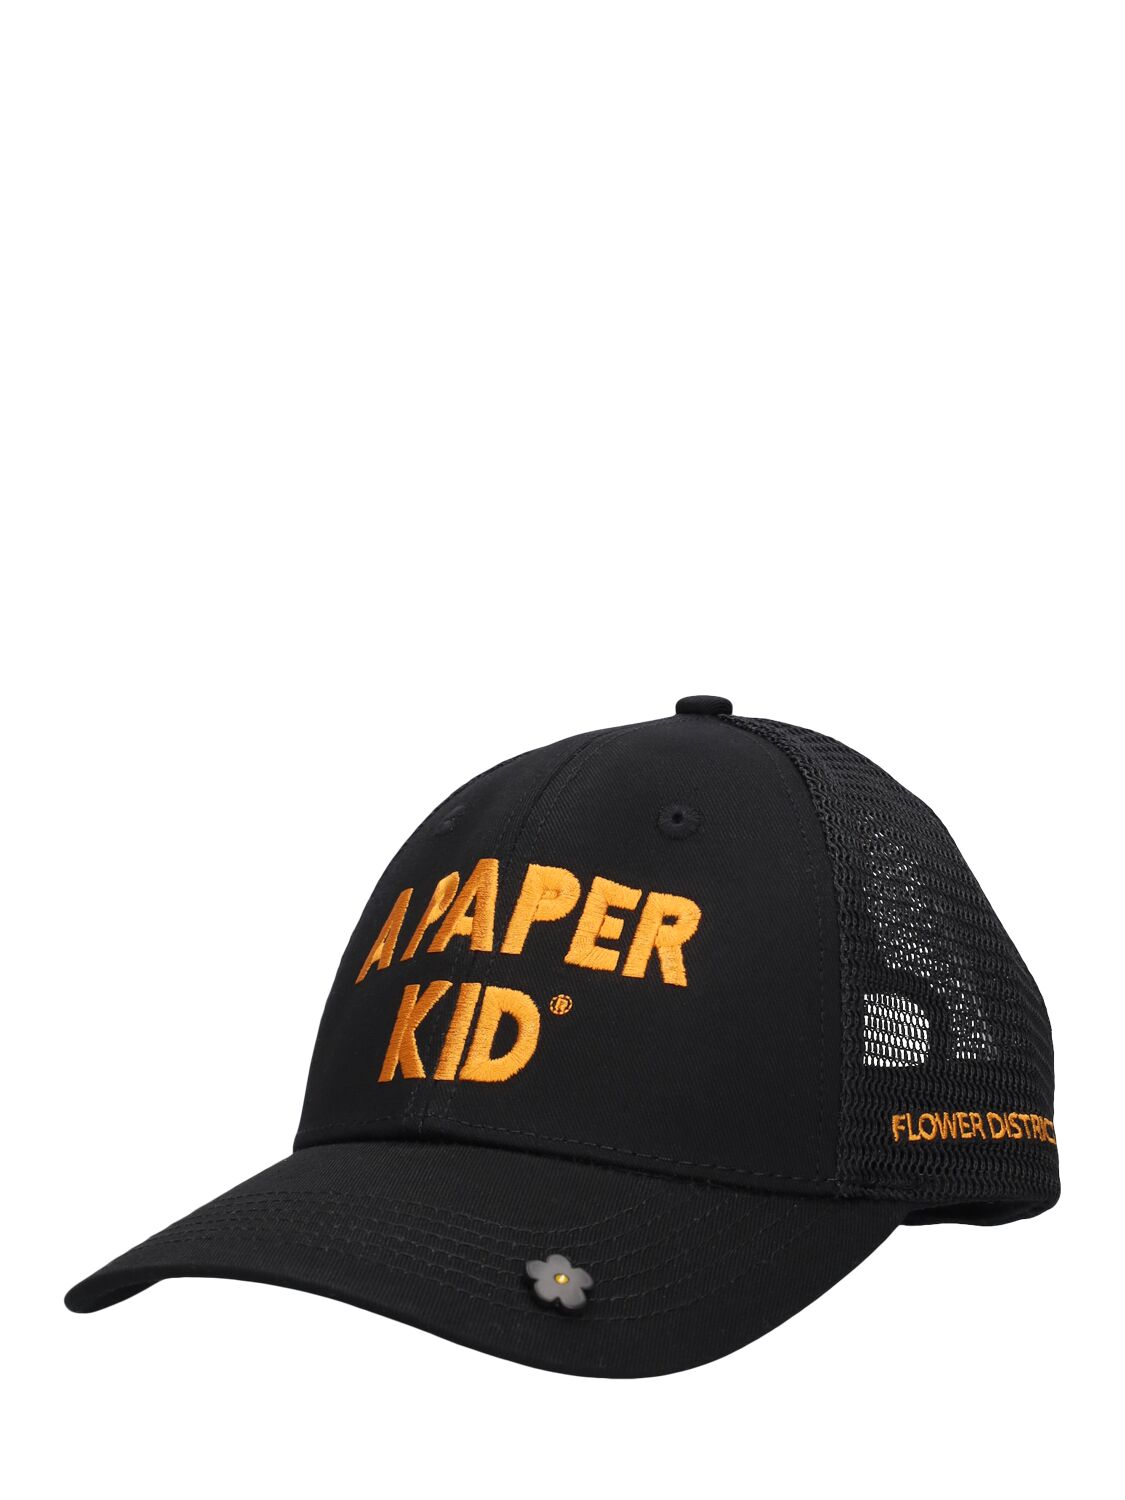 Shop A Paper Kid Unisex Trucker Hat In Black